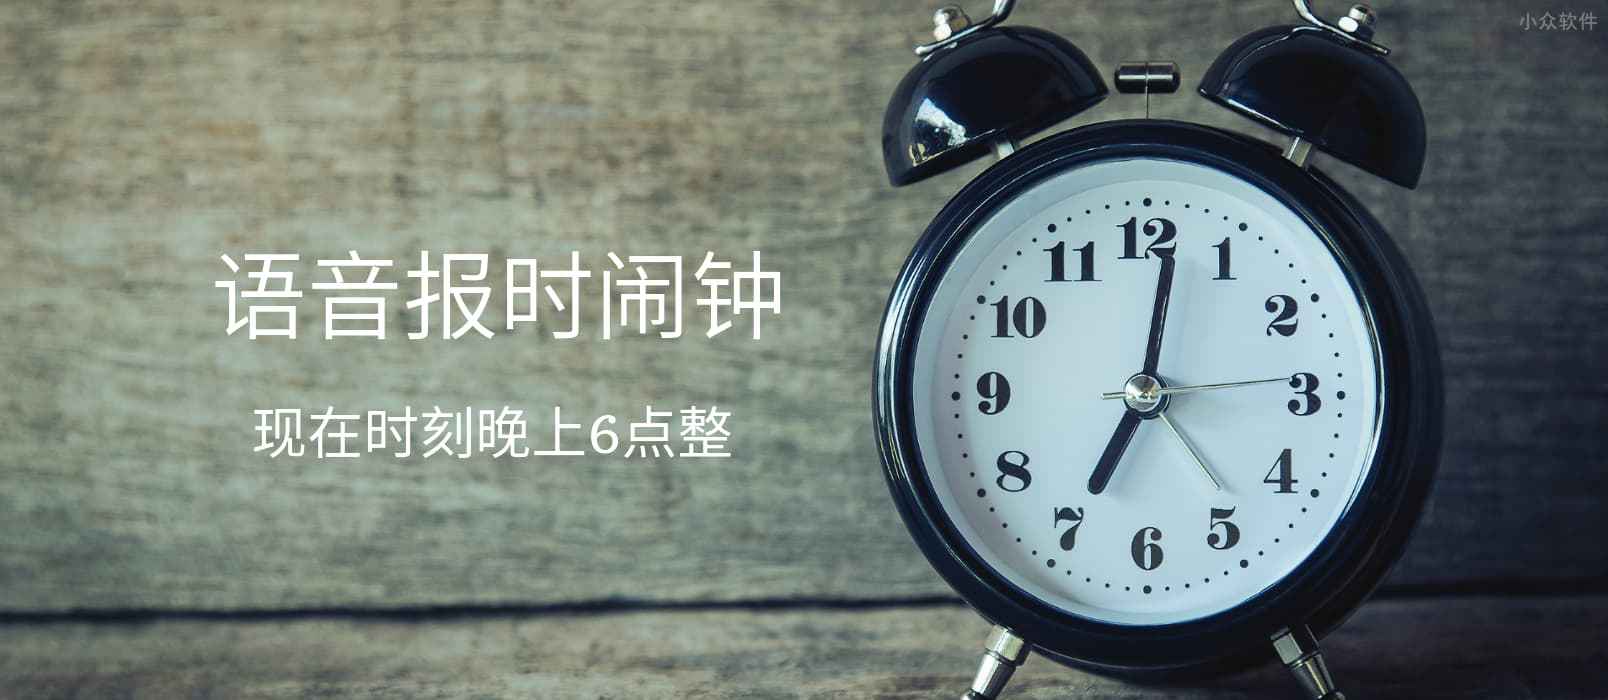 语音报时闹钟 – 支持粤语和四川话的循环提醒与整点报时应用[iPhone/Android]